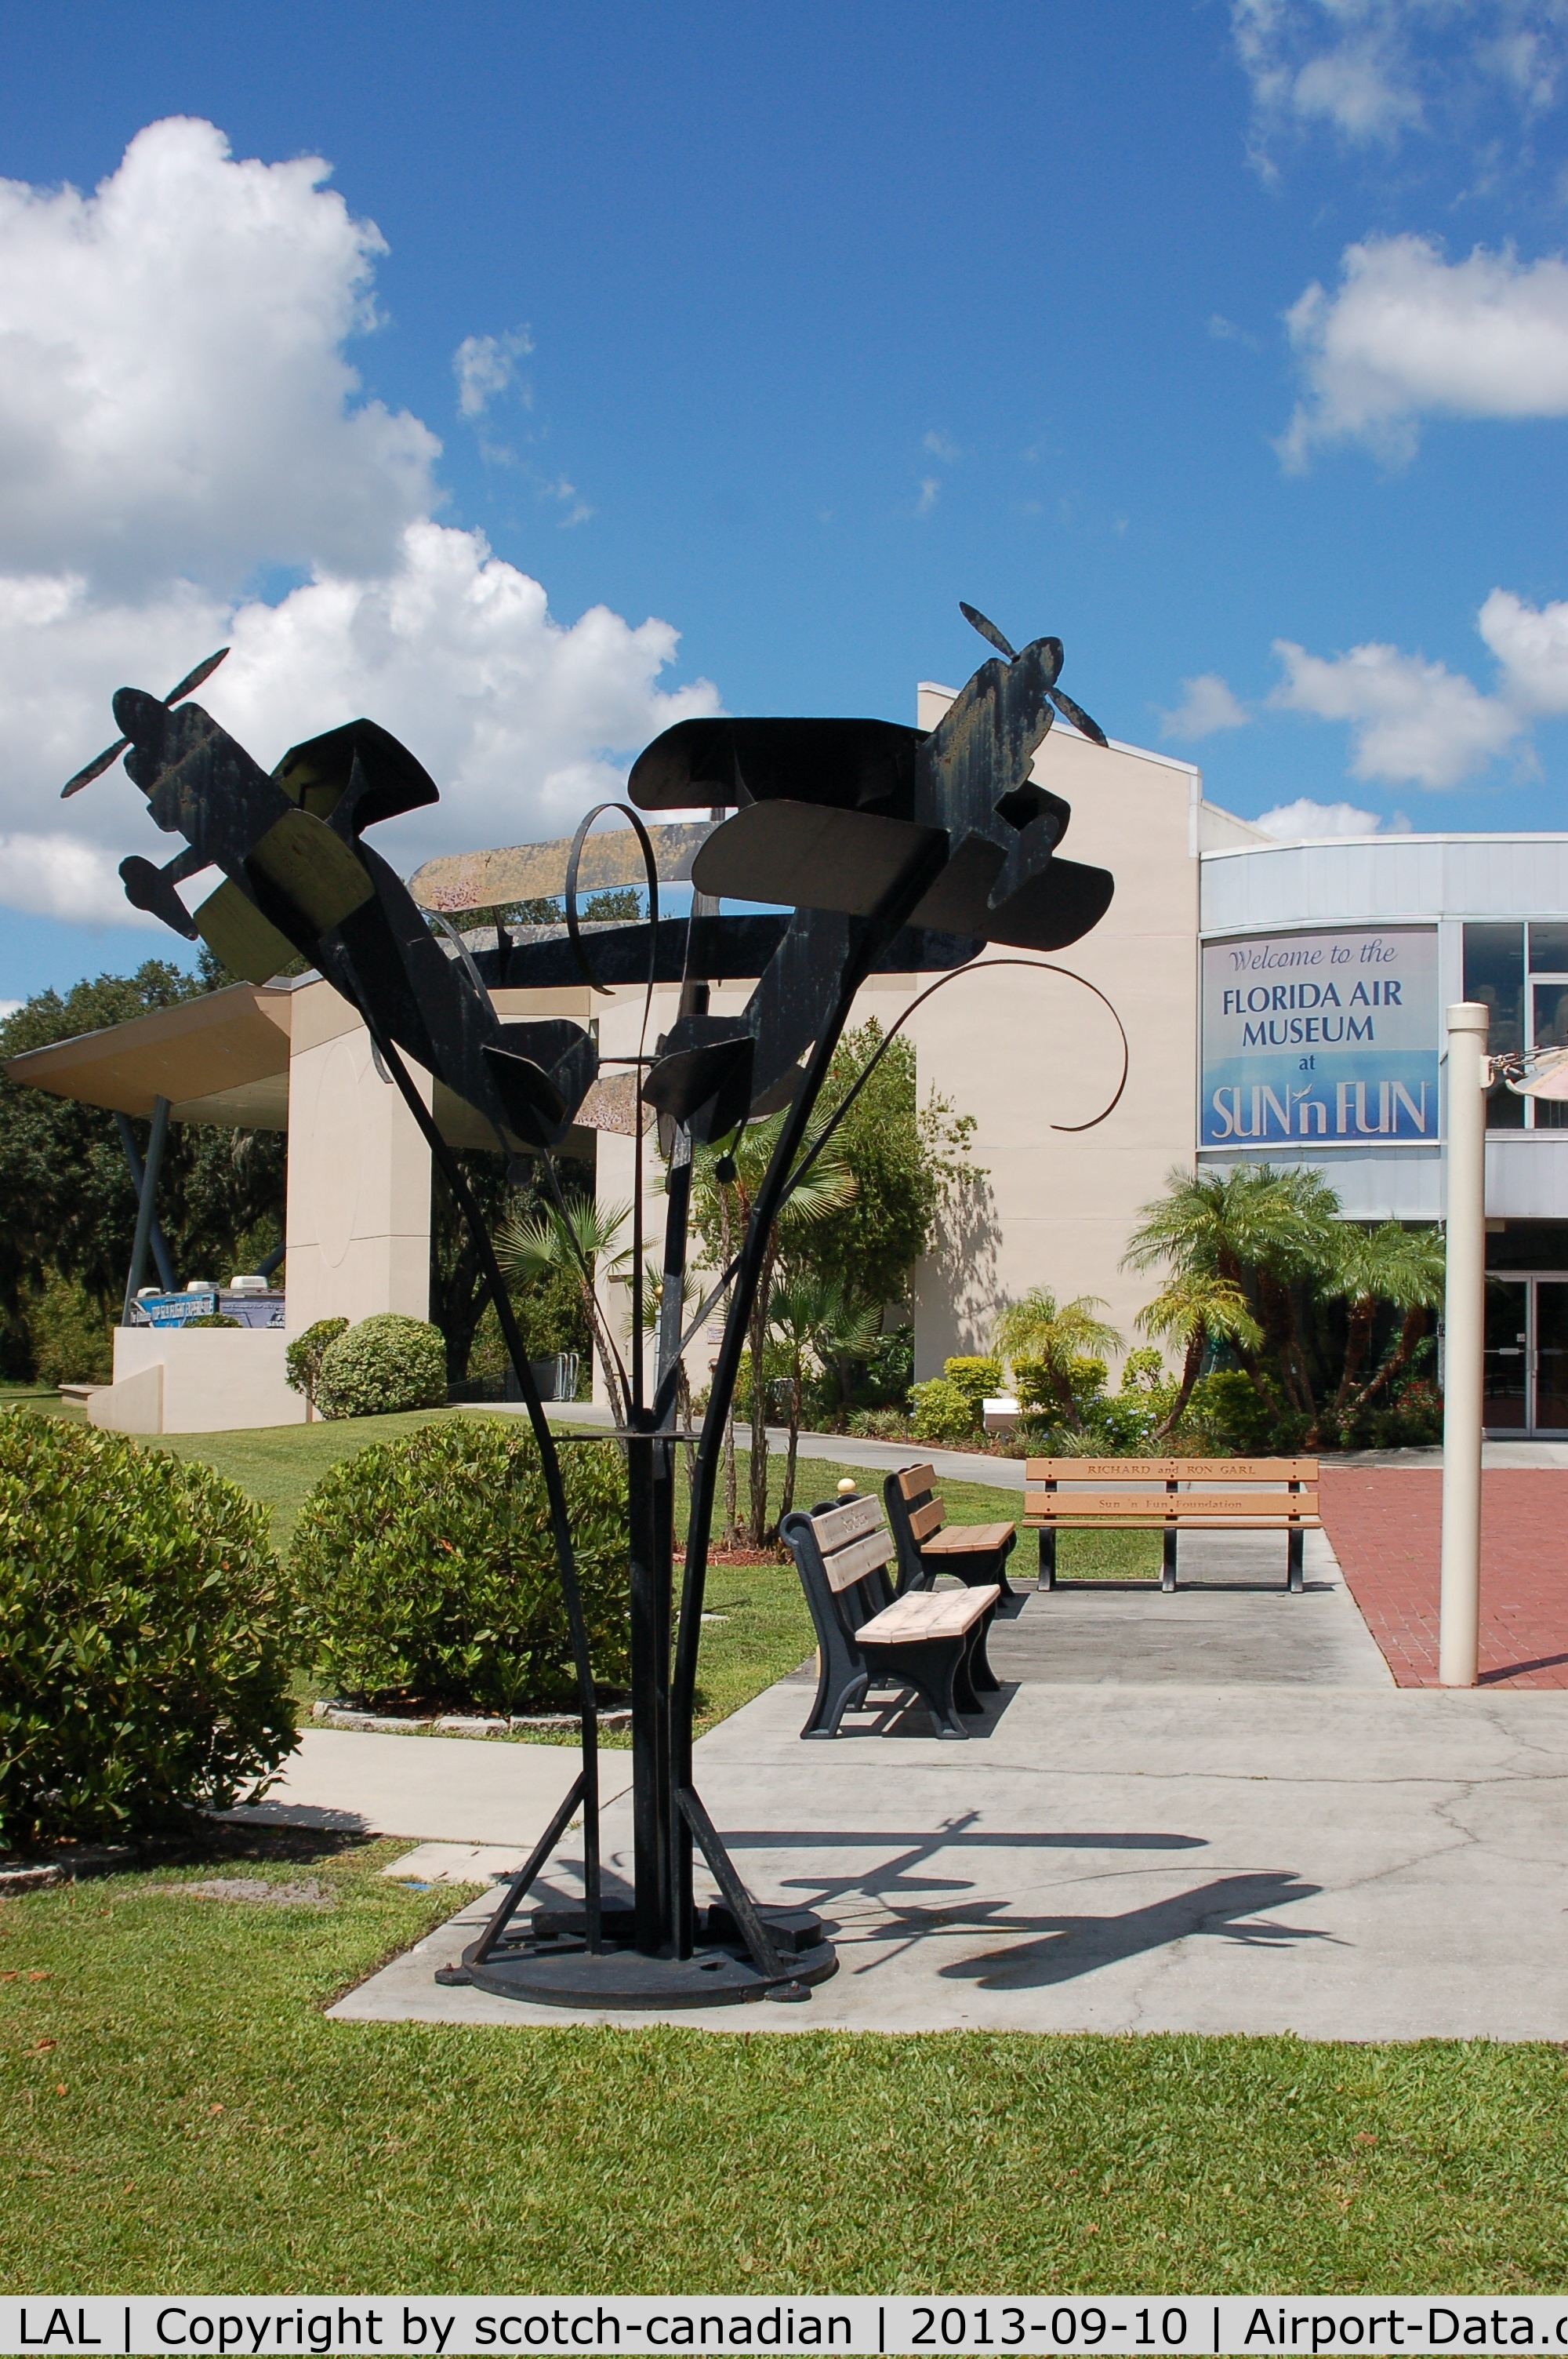 Lakeland Linder Regional Airport (LAL) - Metal Sculpture at the Florida Air Museum, Lakeland Linder Regional Airport, Lakeland, FL